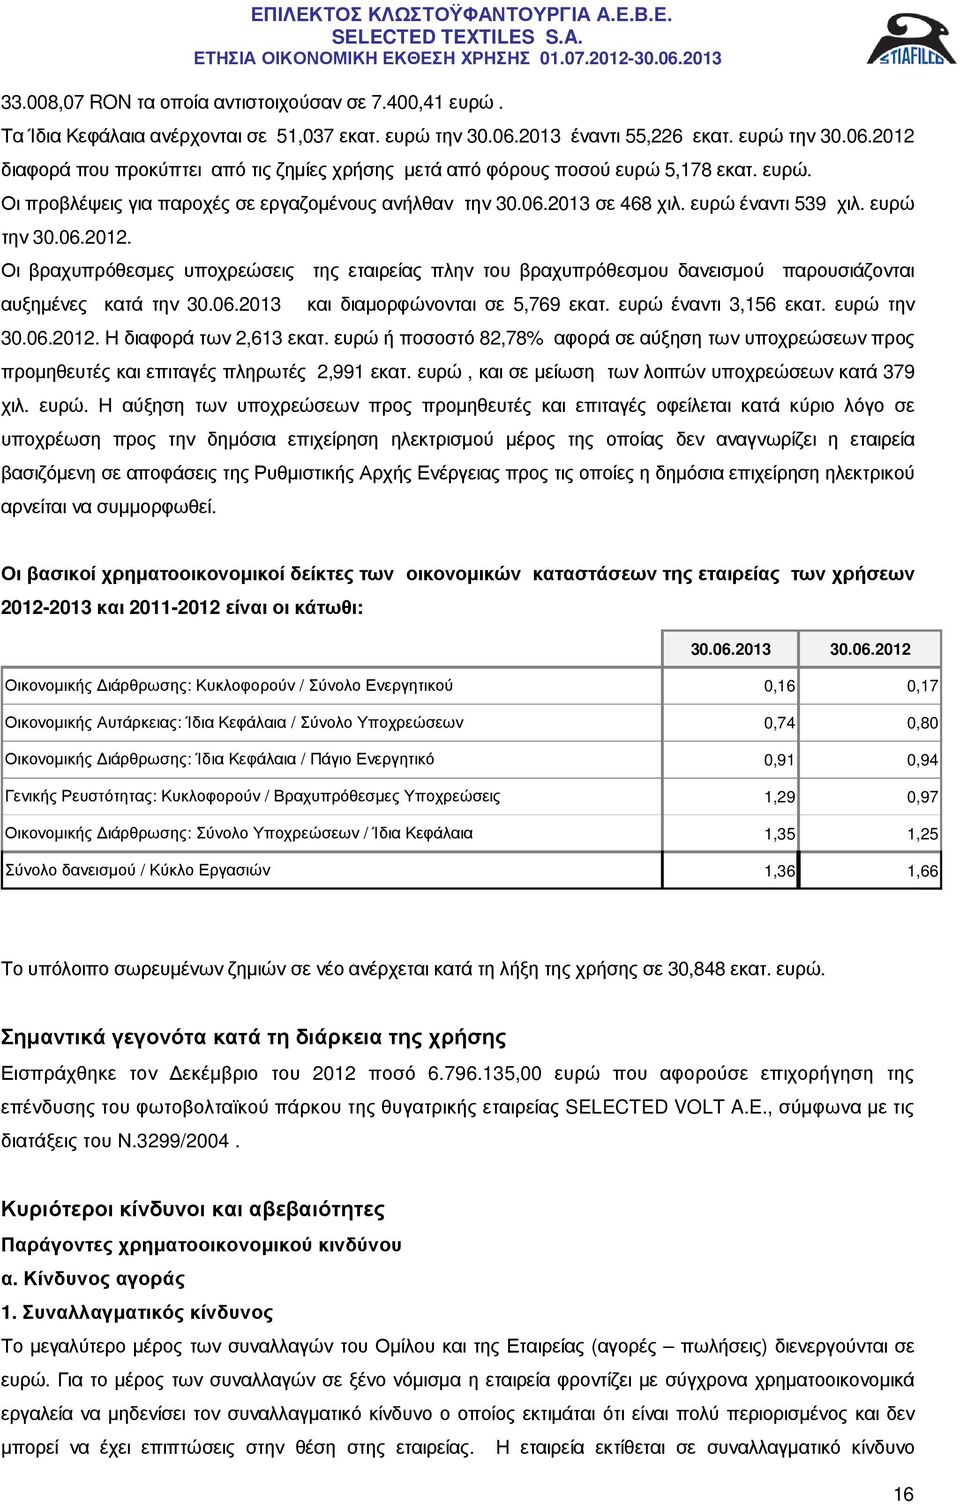 ευρώ έναντι 539 χιλ. ευρώ την 30.06.2012. Οι βραχυπρόθεσµες υποχρεώσεις της εταιρείας πλην του βραχυπρόθεσµου δανεισµού παρουσιάζονται αυξηµένες κατά την 30.06.2013 και διαµορφώνονται σε 5,769 εκατ.